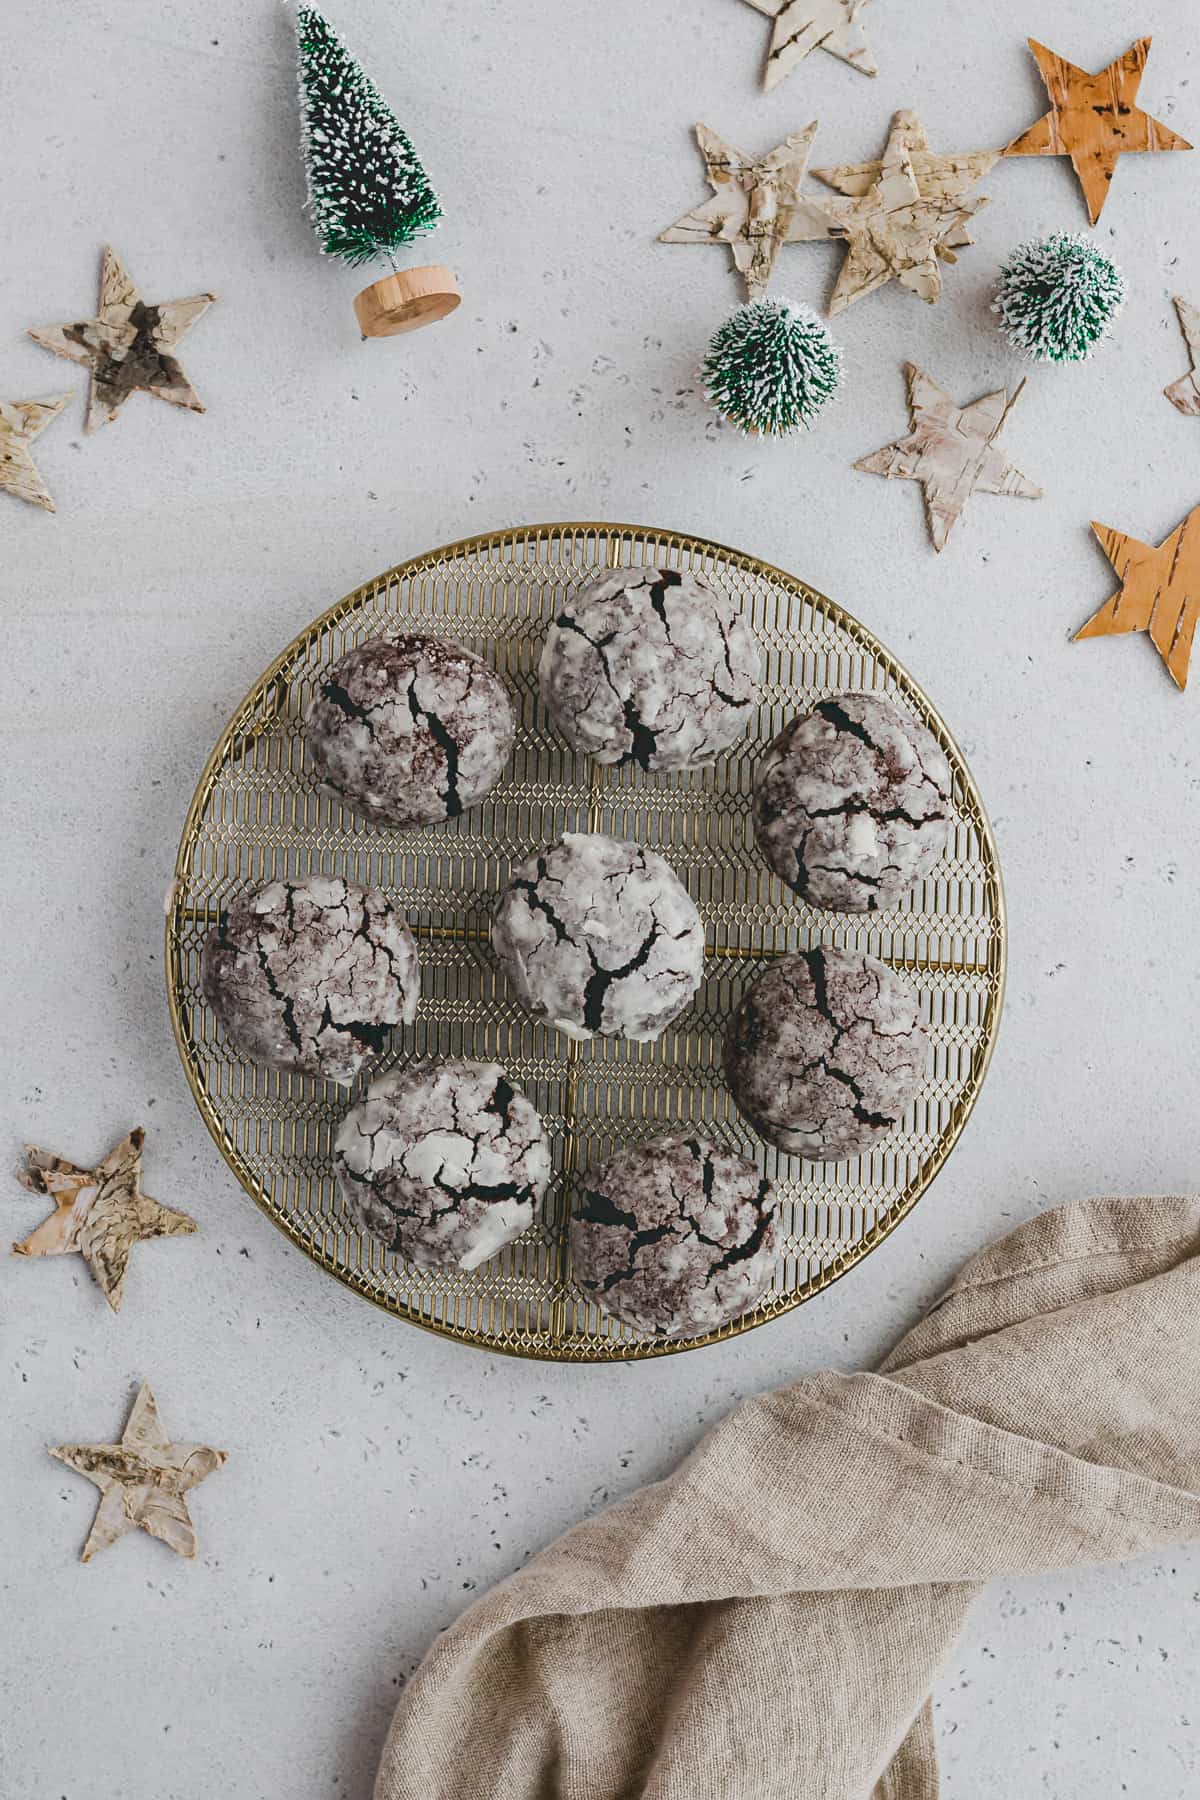 Vegan Chocolate Crinkle Cookies Recipe Step 9